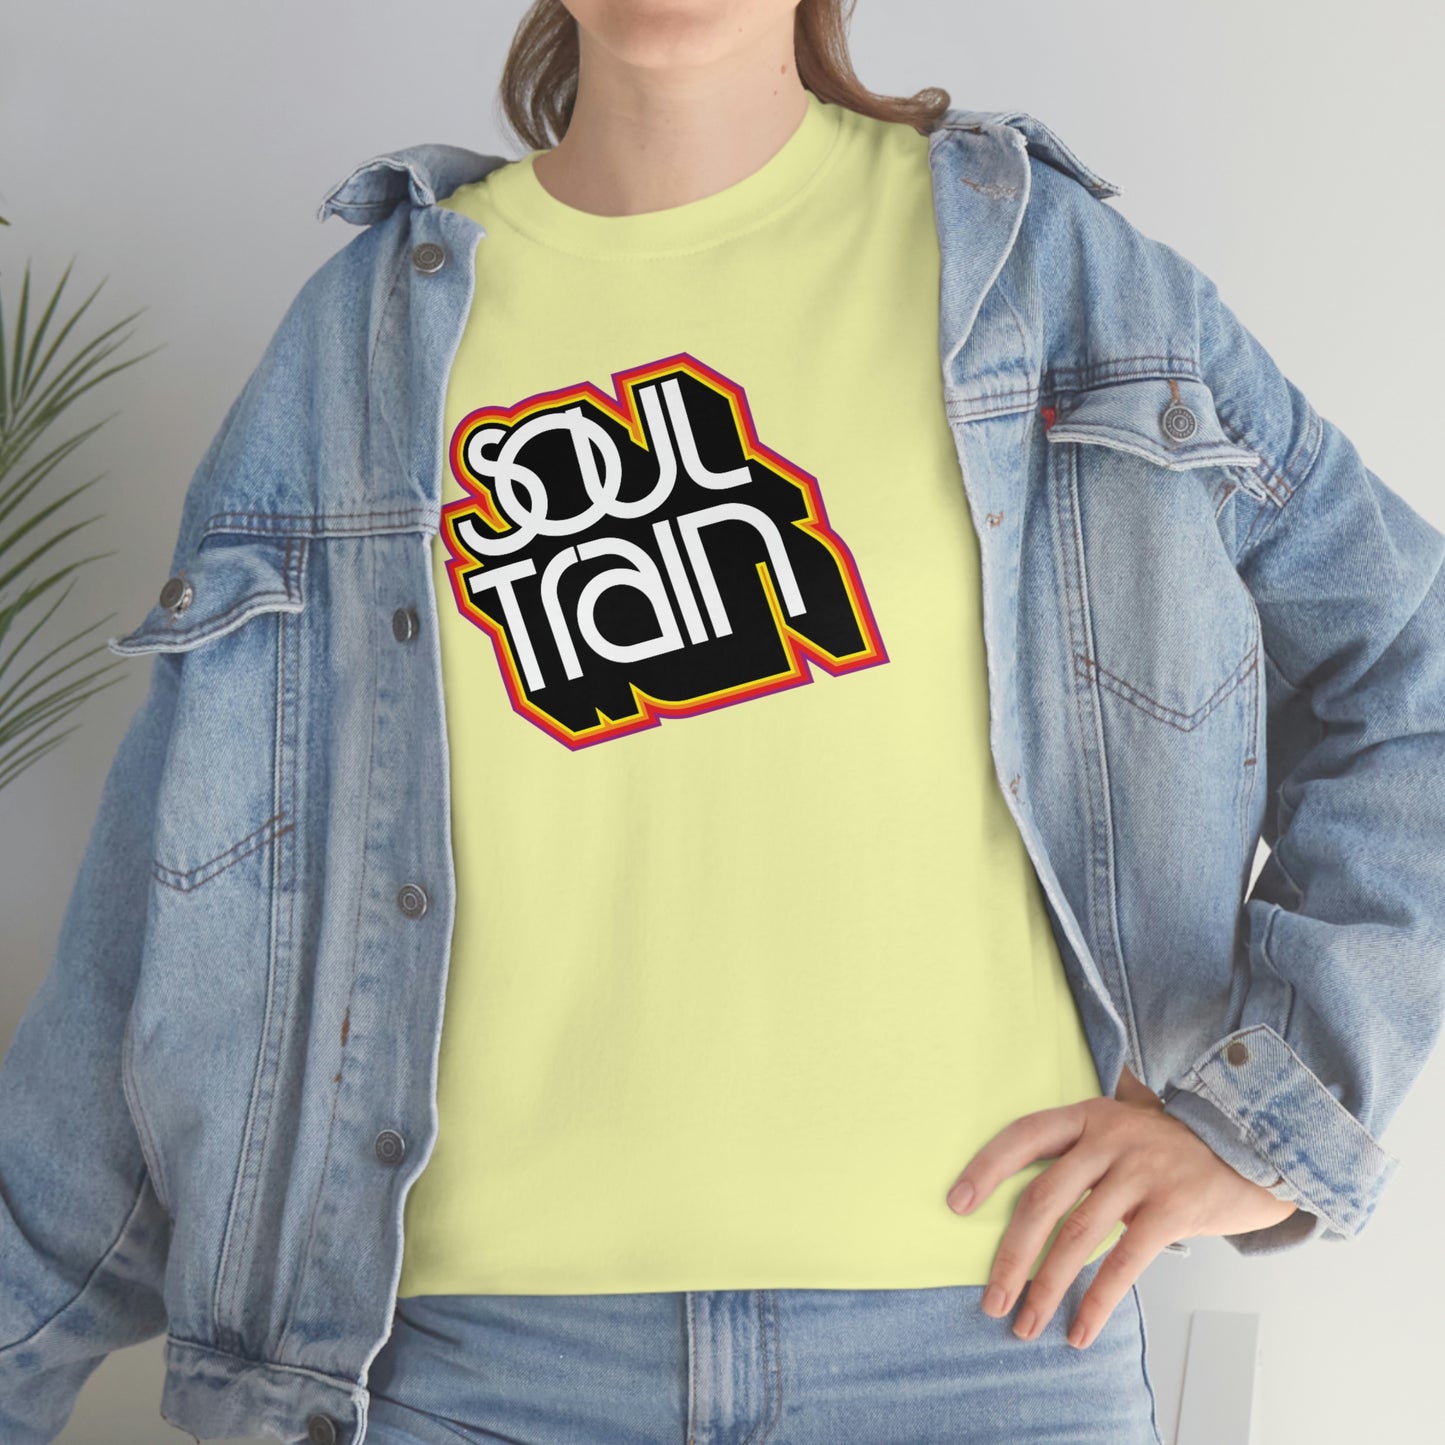 Soul Train T-Shirt